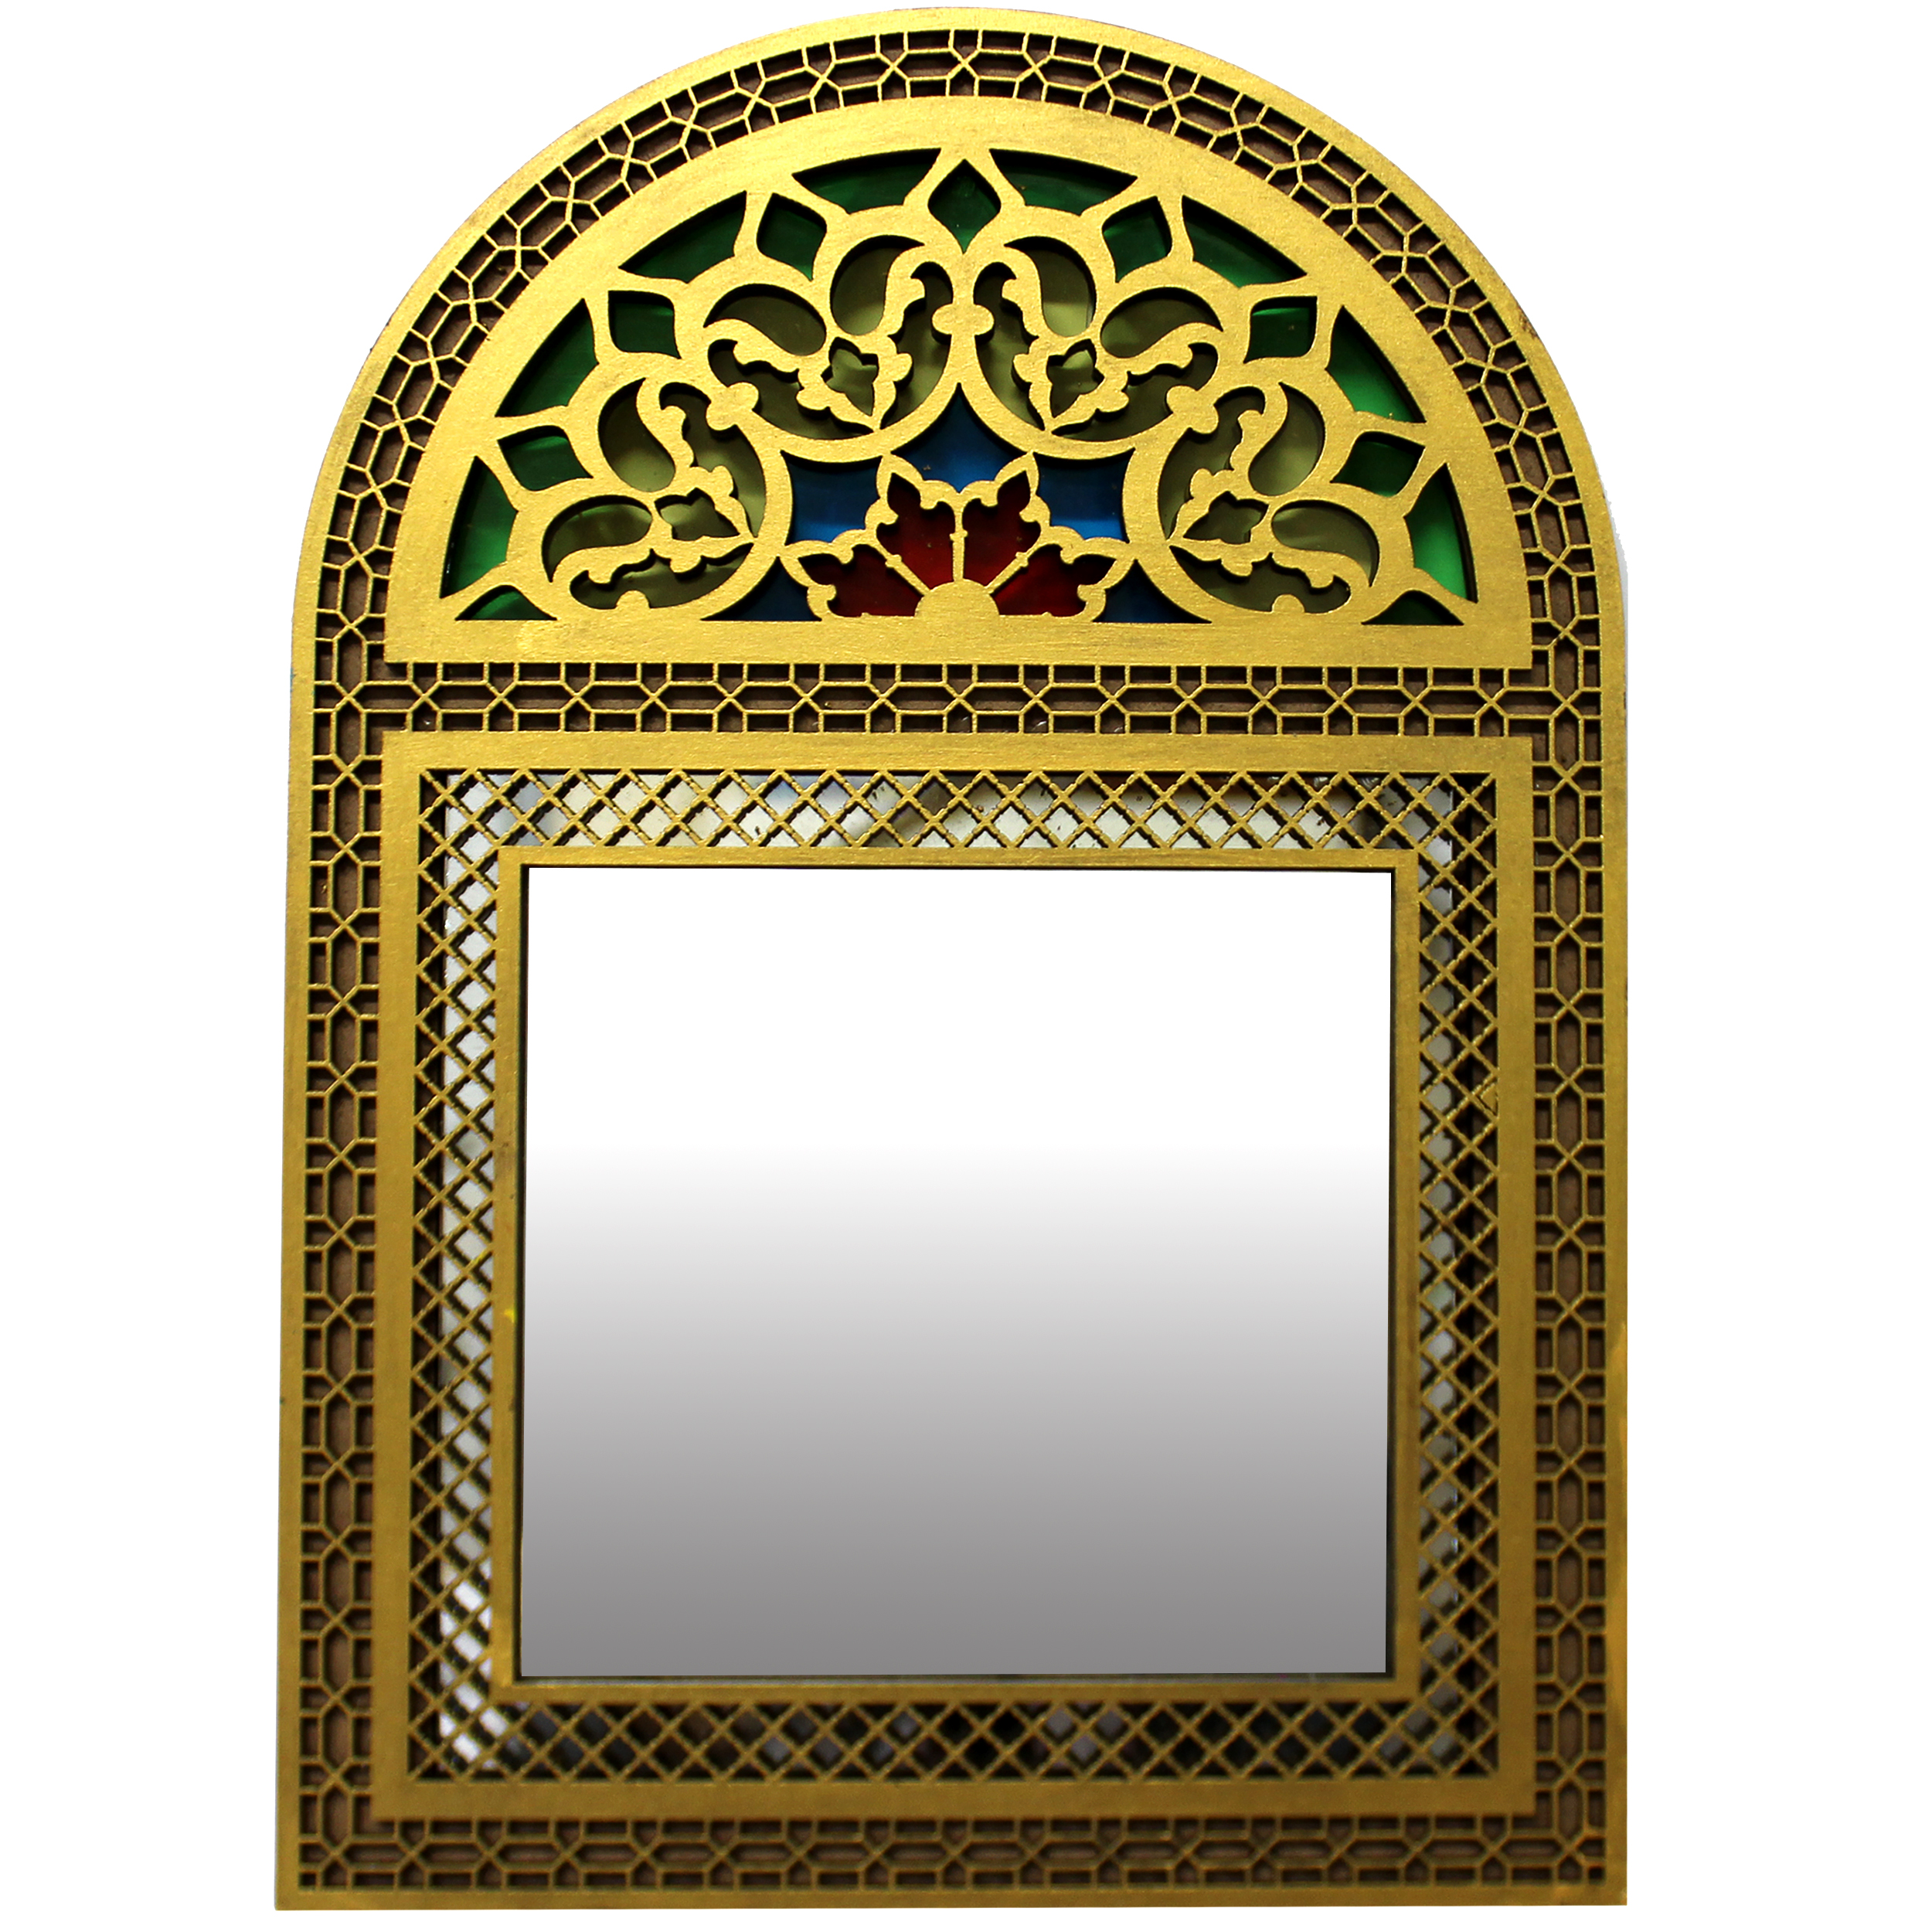 آینه دست نگار طرح پنجره سنتی کد 02-20